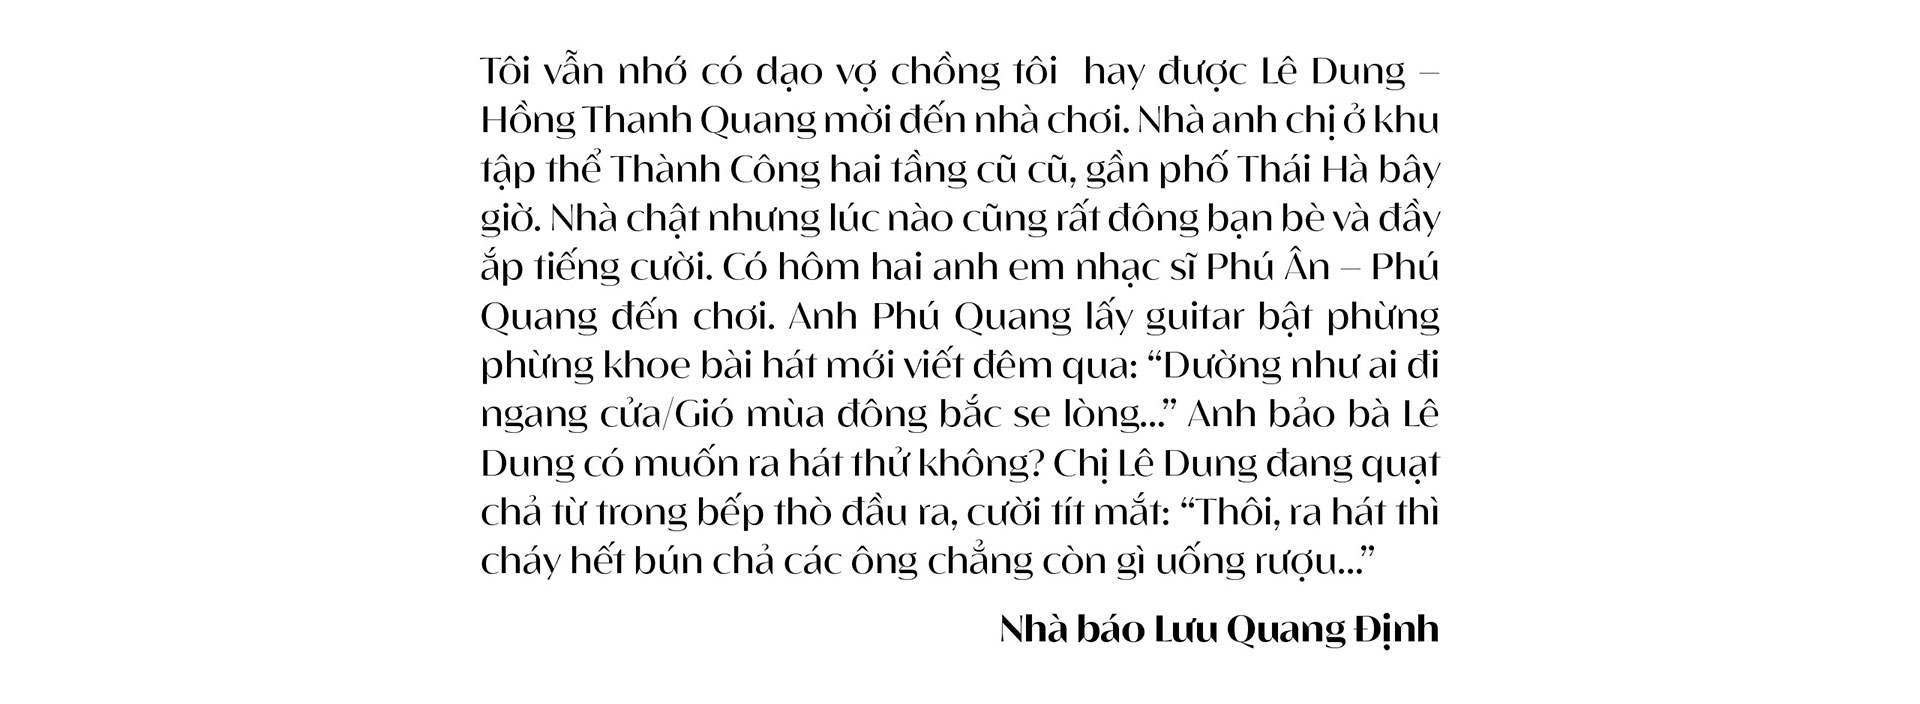 Trò chuyện giữa nhà báo Lưu Quang Định và nhà thơ,  nhà báo Hồng Thanh Quang: Về Thơ, Tình yêu và Cuộc đời - Ảnh 10.